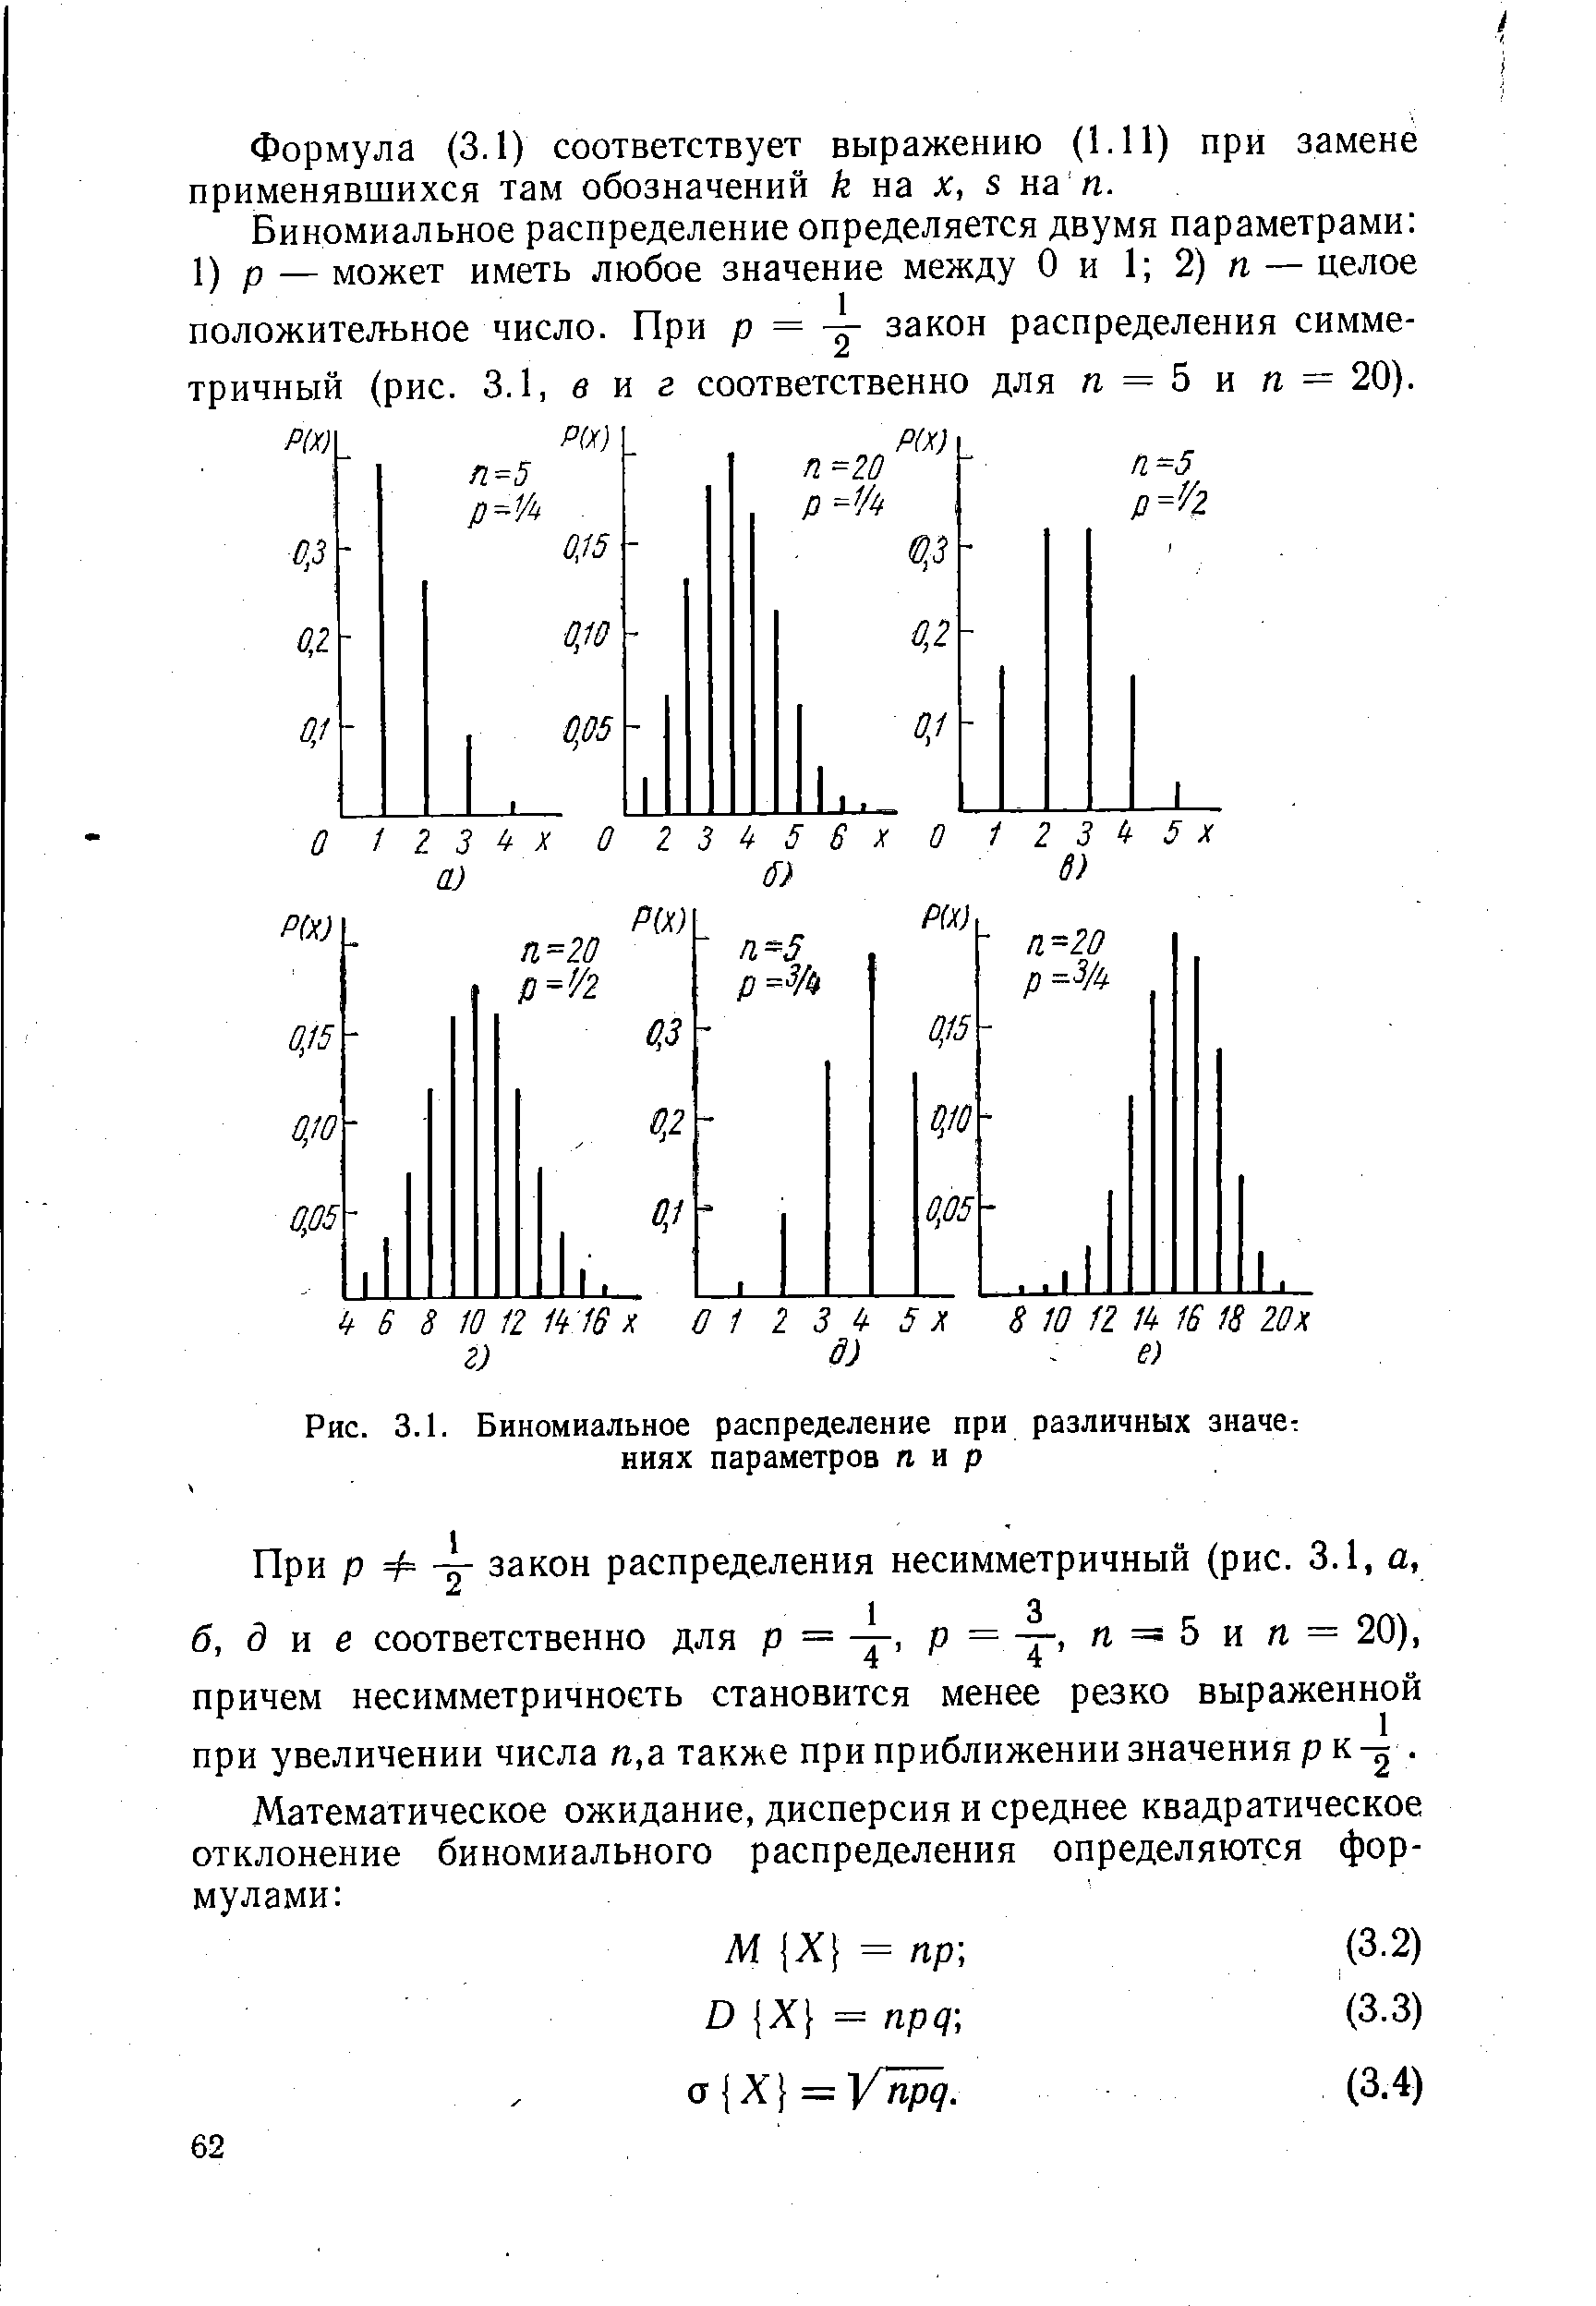 Рис. 3.1. Биномиальное распределение при различных значе ниях параметров лир
